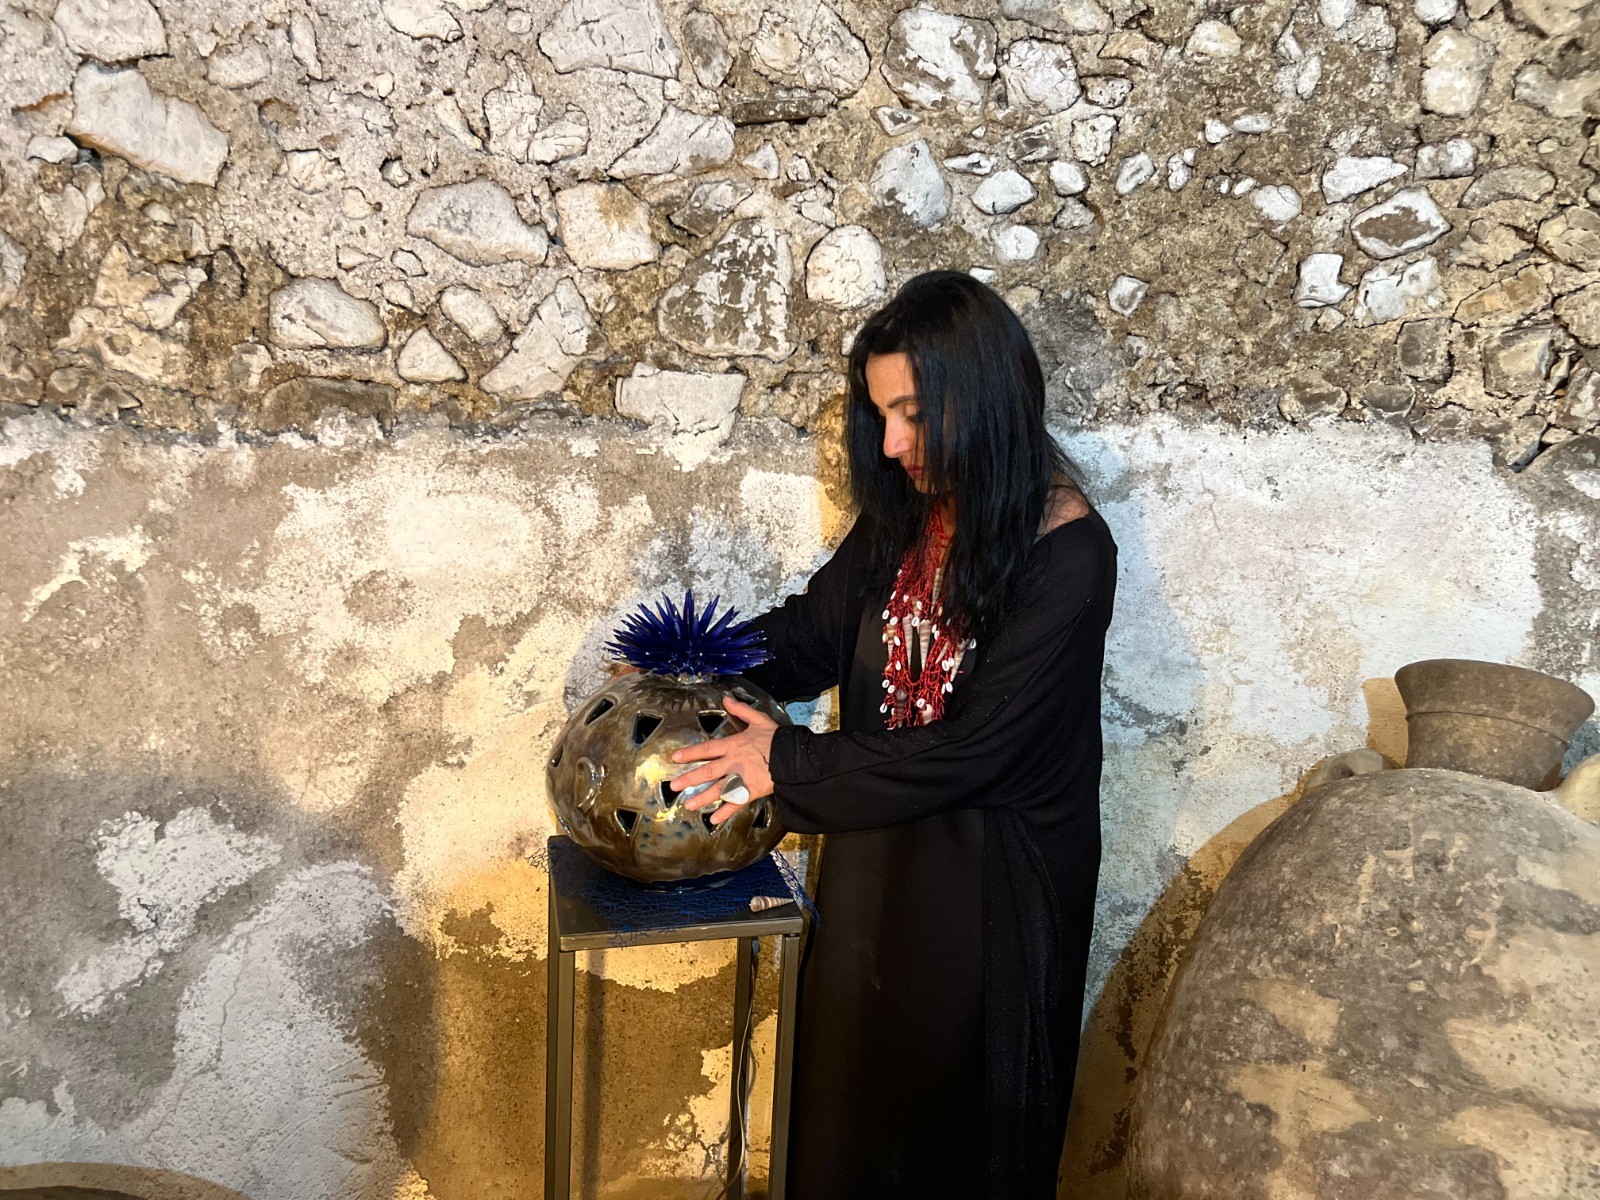 Storia, luci e colori del Mediterraneo nelle ceramiche dell’artista cavese Annamaria Panariello in mostra alla Faenzera di Amalfi